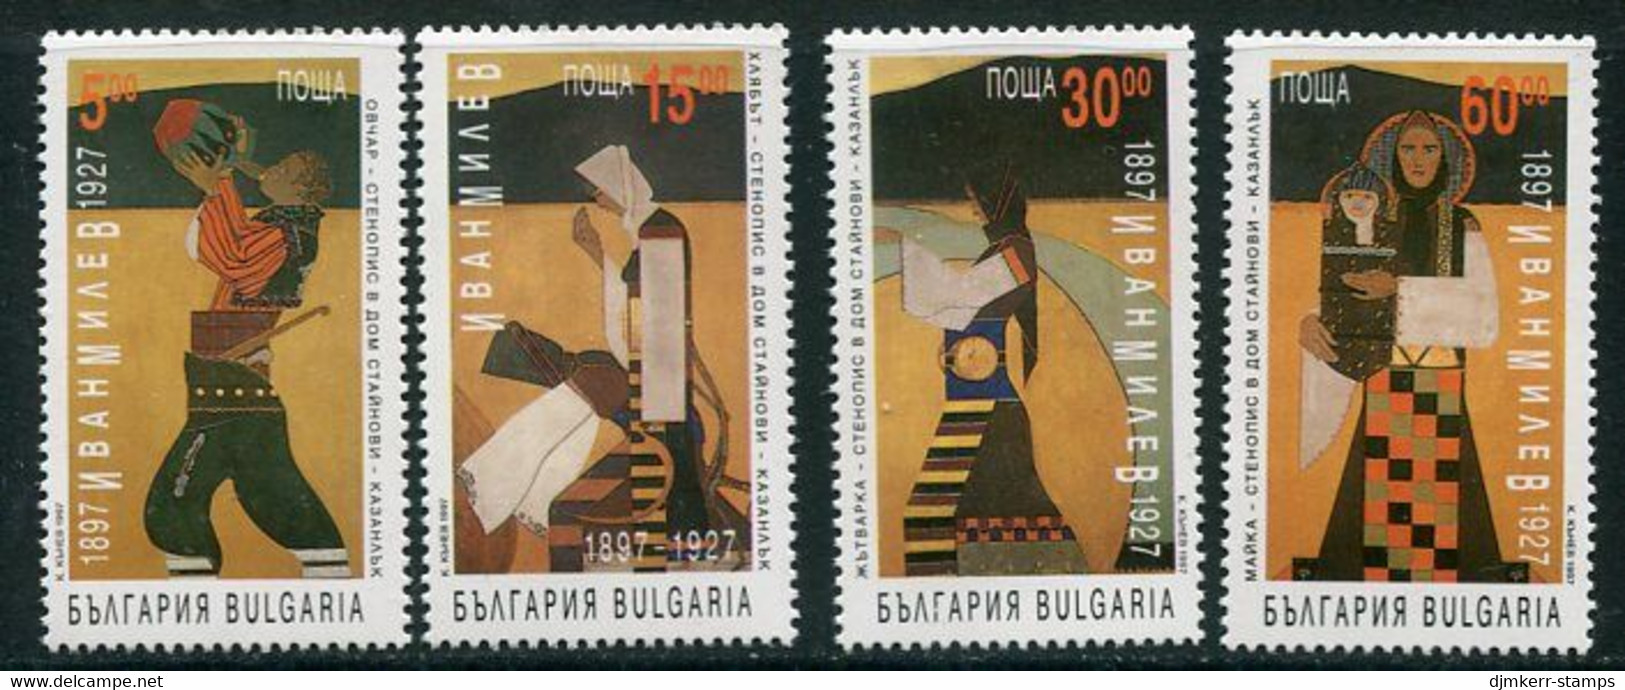 BULGARIA 1997 Milev Centenary MNH / **.  Michel 4270-73 - Nuovi